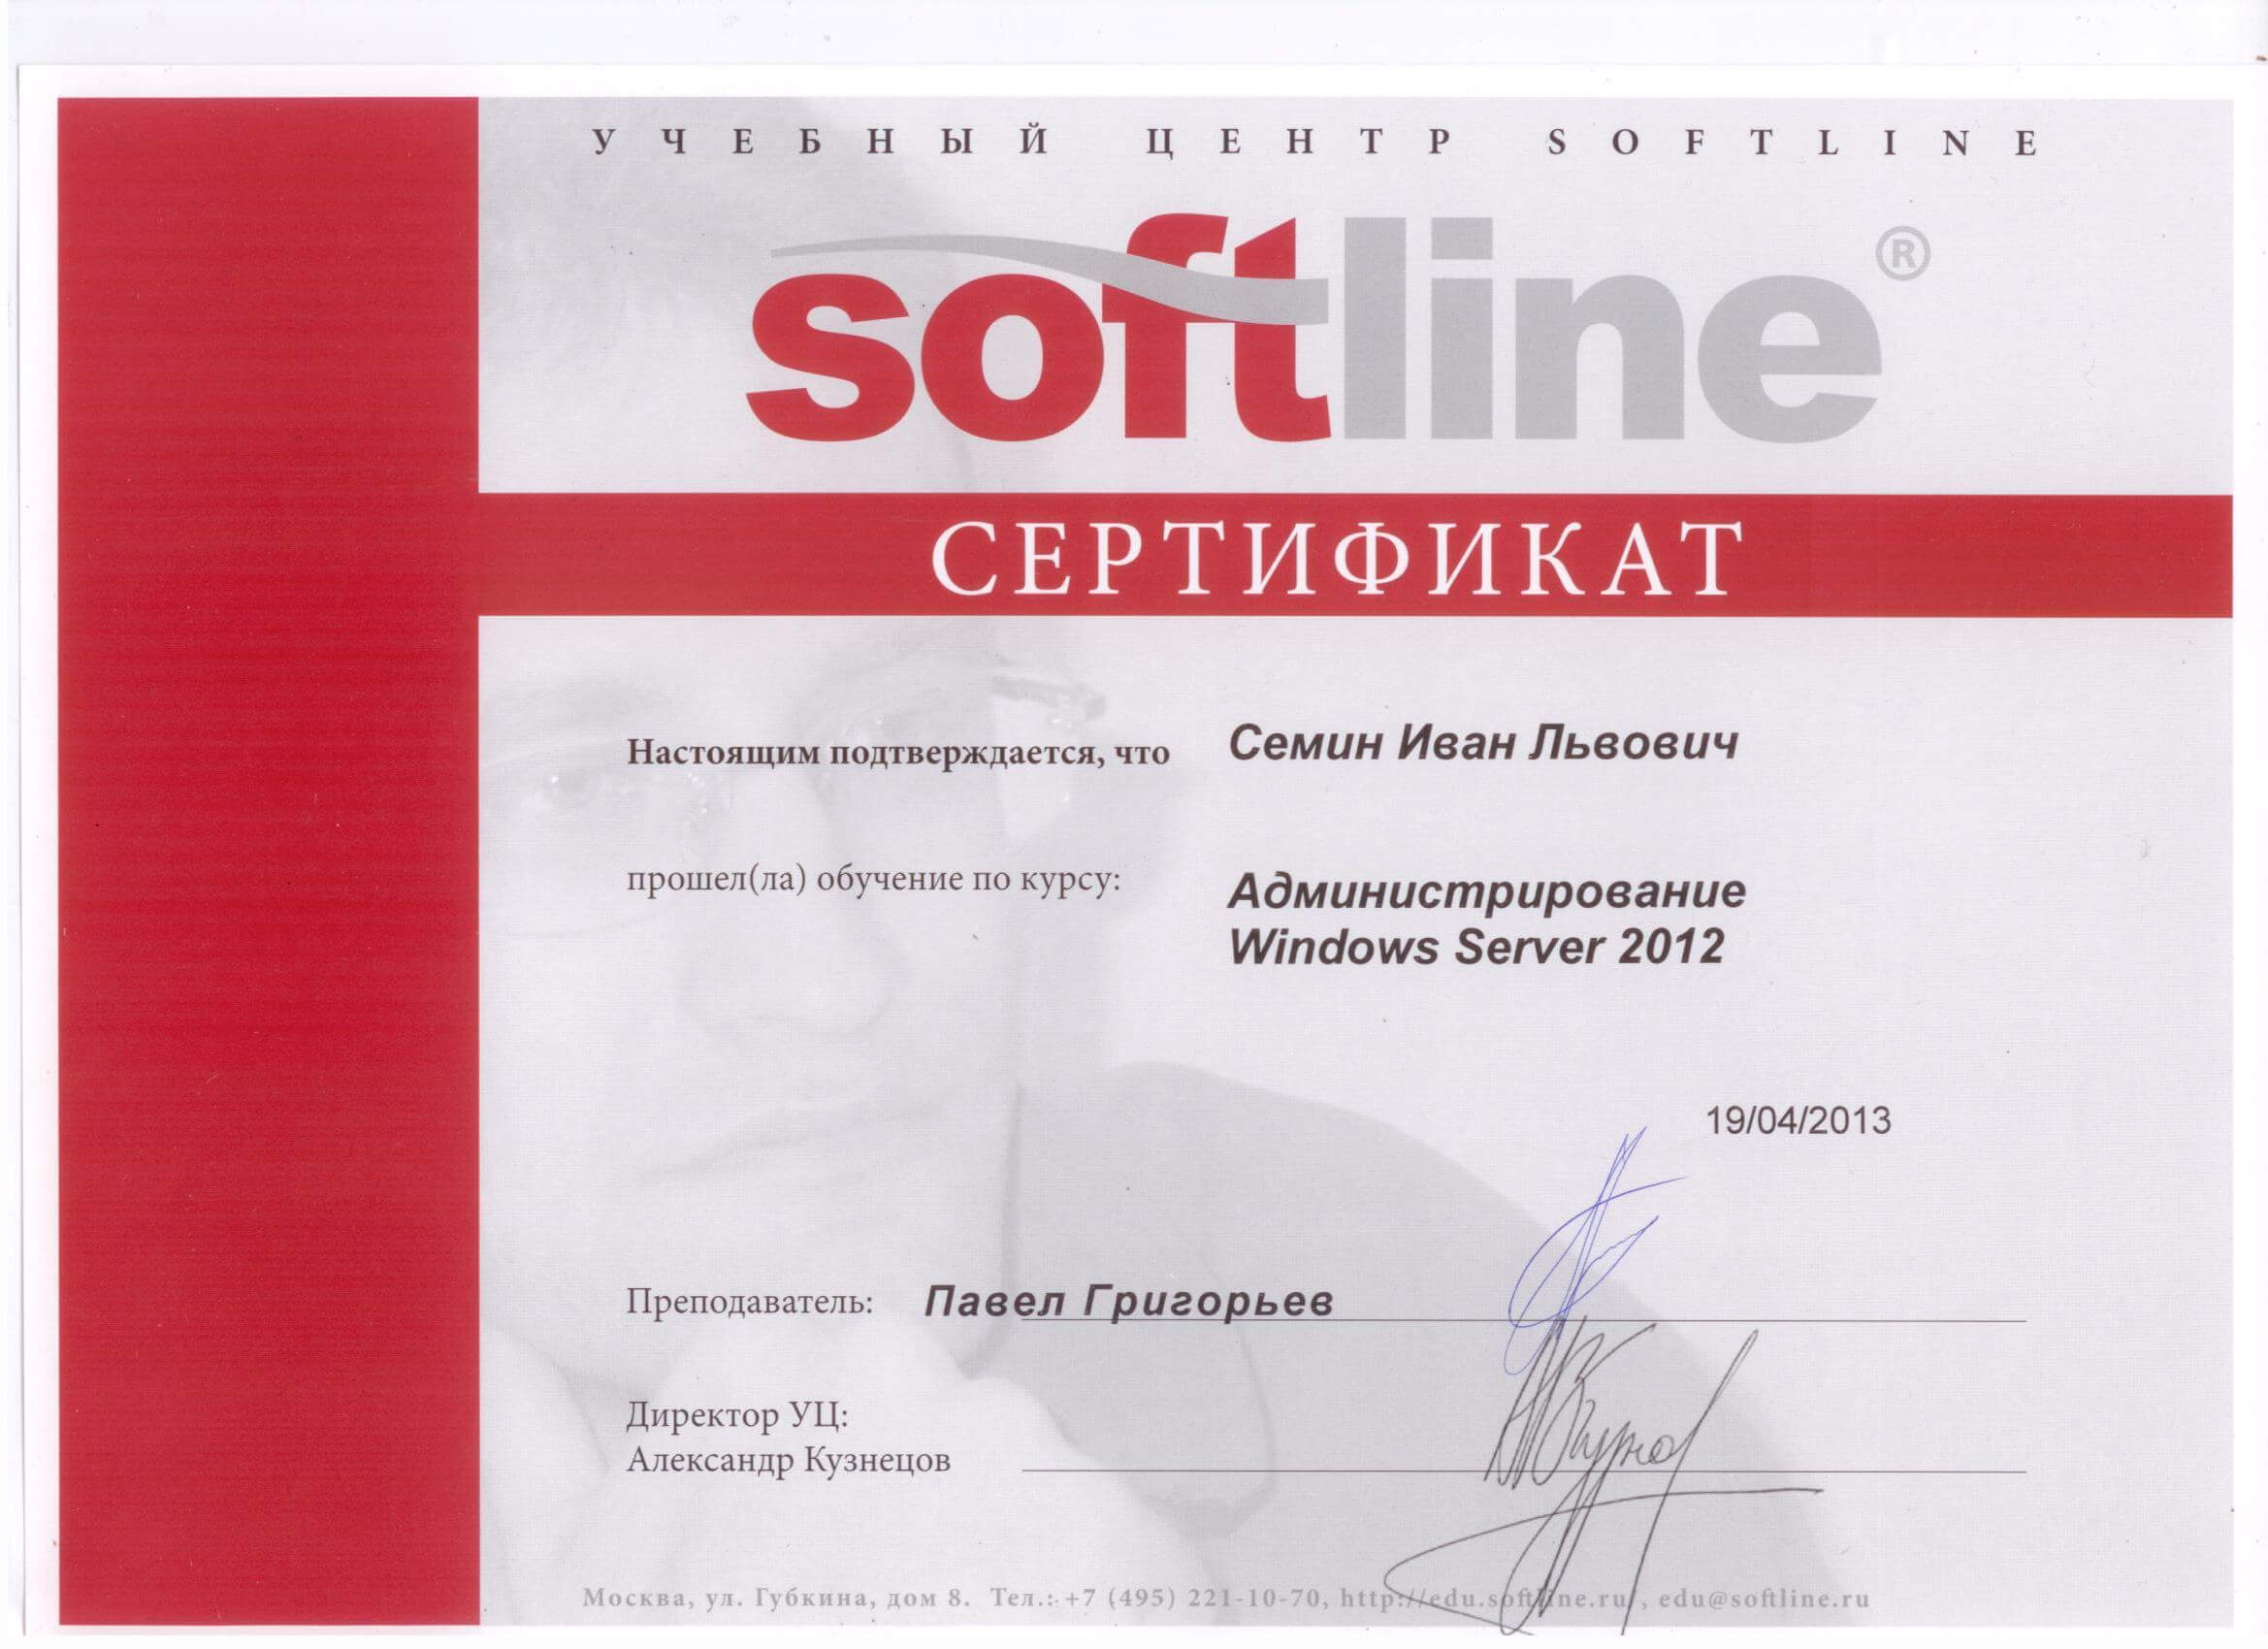 Сертификат Softline 70-411 - Администрирование Windows Server 2012 #ИванСемин